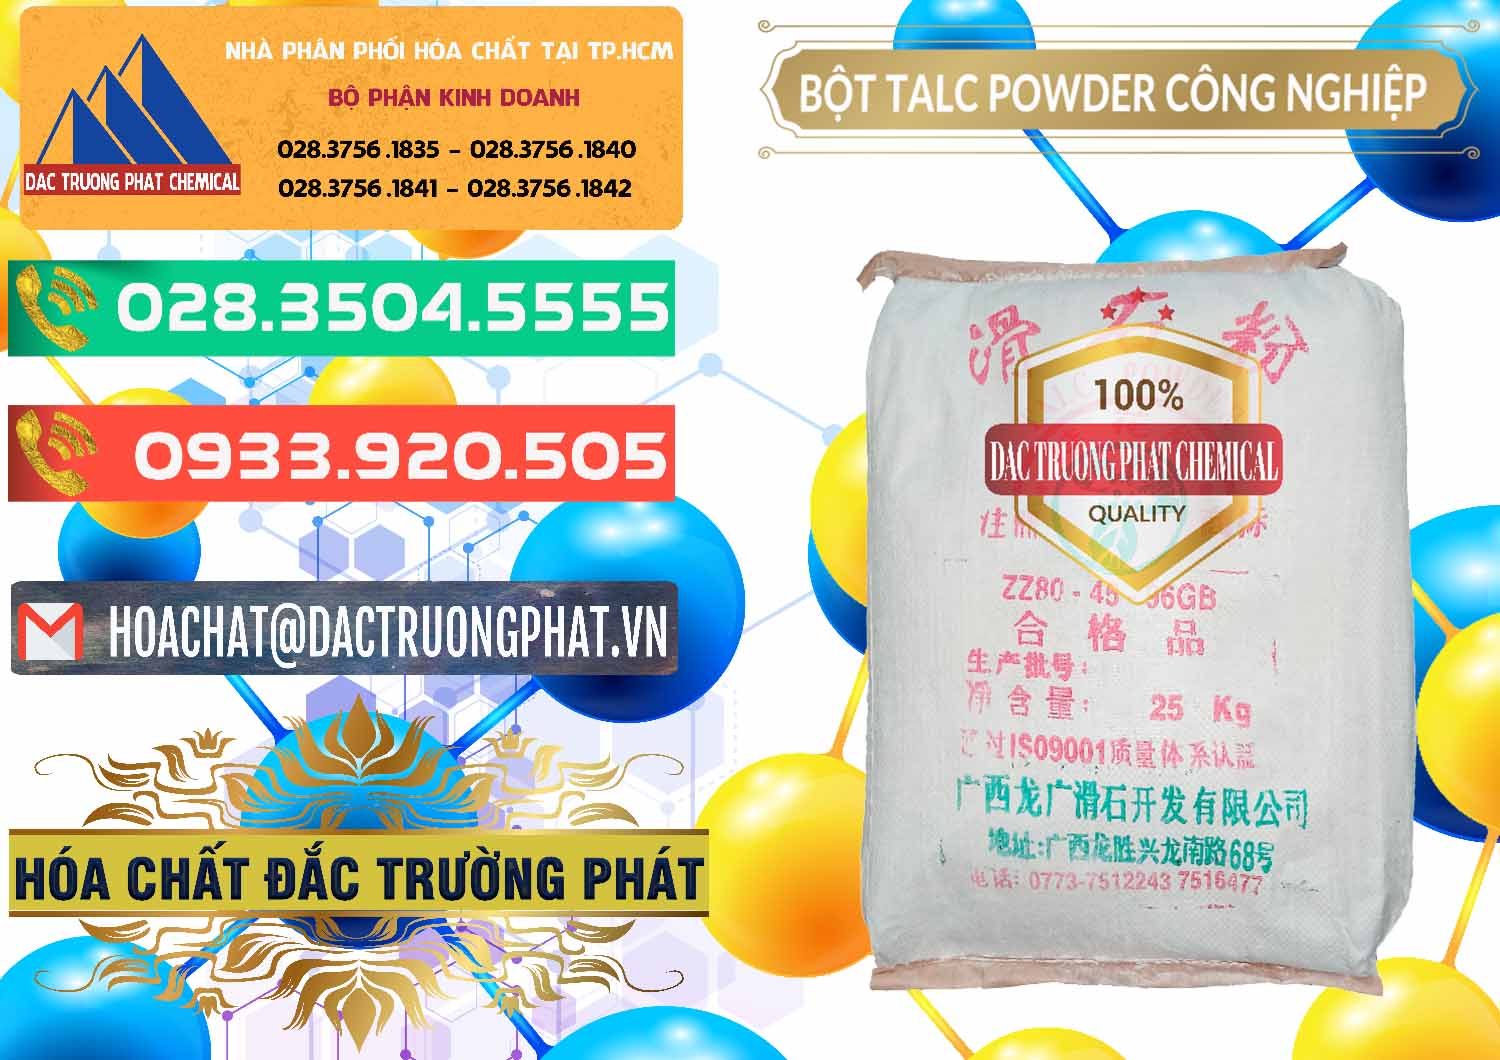 Cty kinh doanh và bán Bột Talc Powder Công Nghiệp Trung Quốc China - 0037 - Công ty kinh doanh & phân phối hóa chất tại TP.HCM - congtyhoachat.com.vn